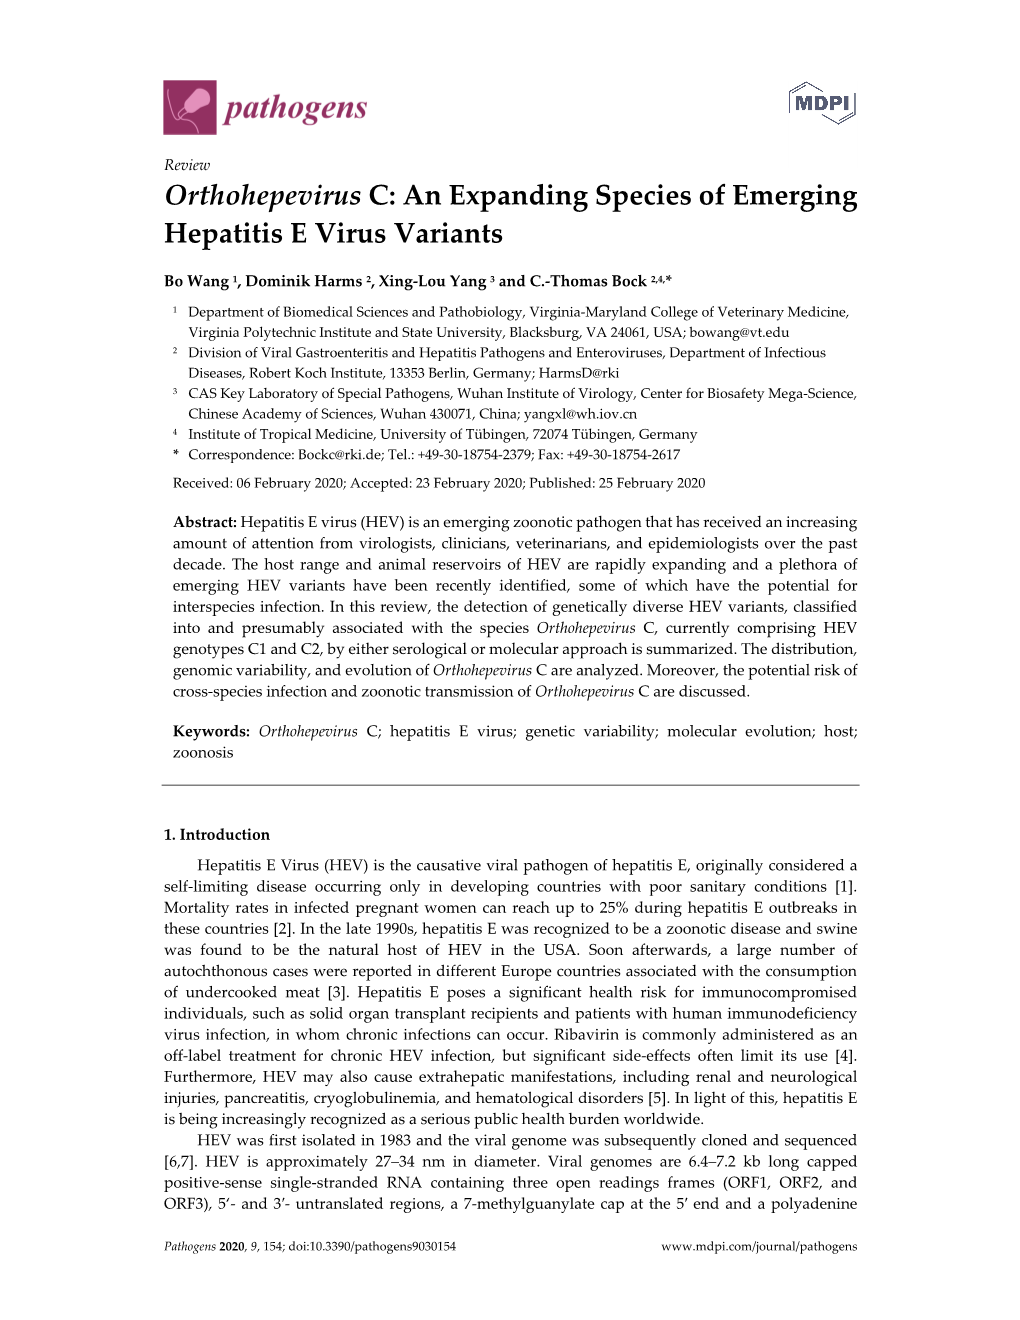 Orthohepevirus C: an Expanding Species of Emerging Hepatitis E Virus Variants